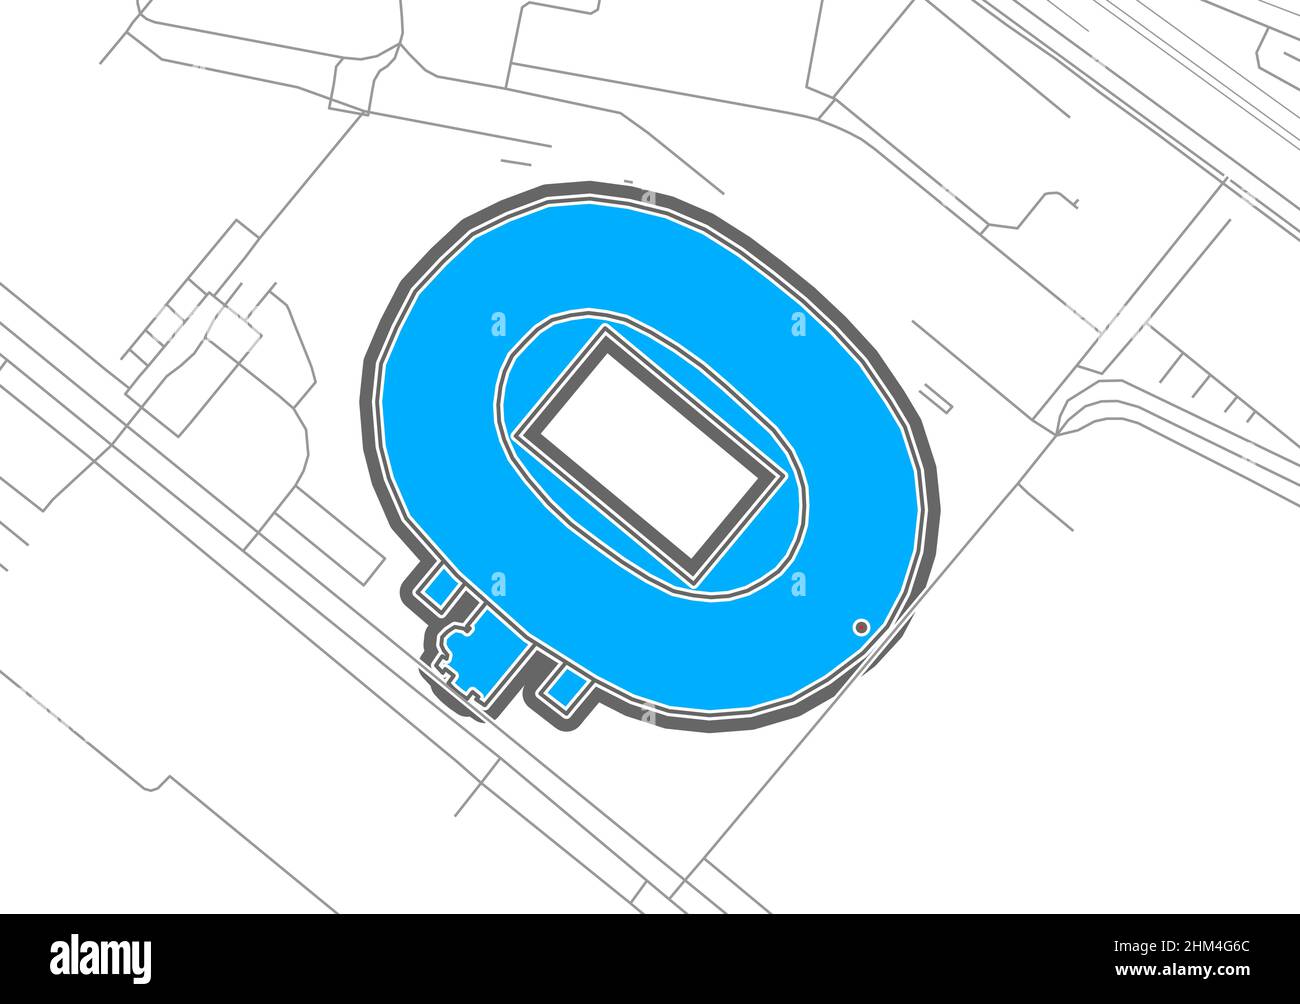 Stuttgart, estadio de fútbol, mapa vectorial de contorno. El mapa del estadio de la bundesliga se trazó con zonas blancas y líneas para las carreteras principales y laterales. Ilustración del Vector